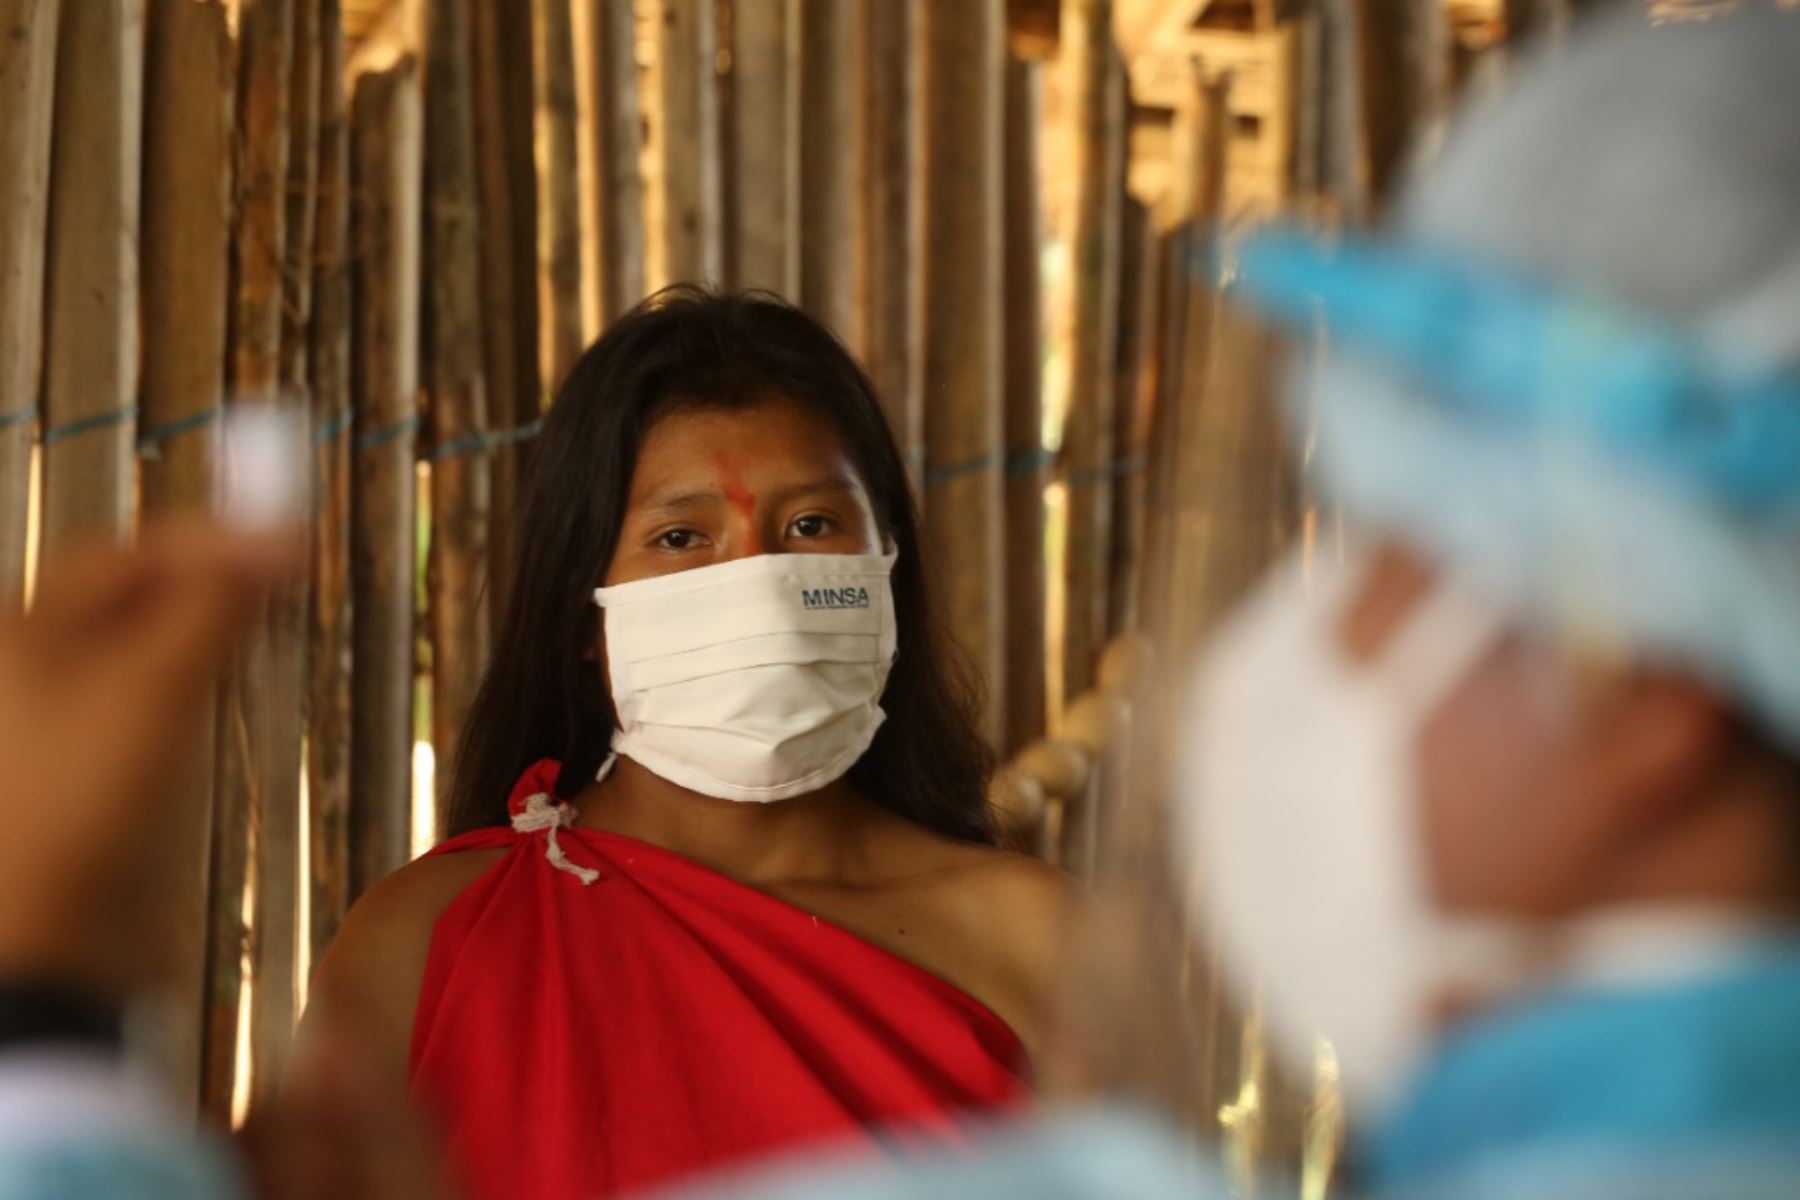 El Ministerio de Salud ha destinado 500,000 dosis de la vacuna contra el covid-19 de Sinopharm a 11 regiones con población amazónica. Foto: ANDINA/difusión.